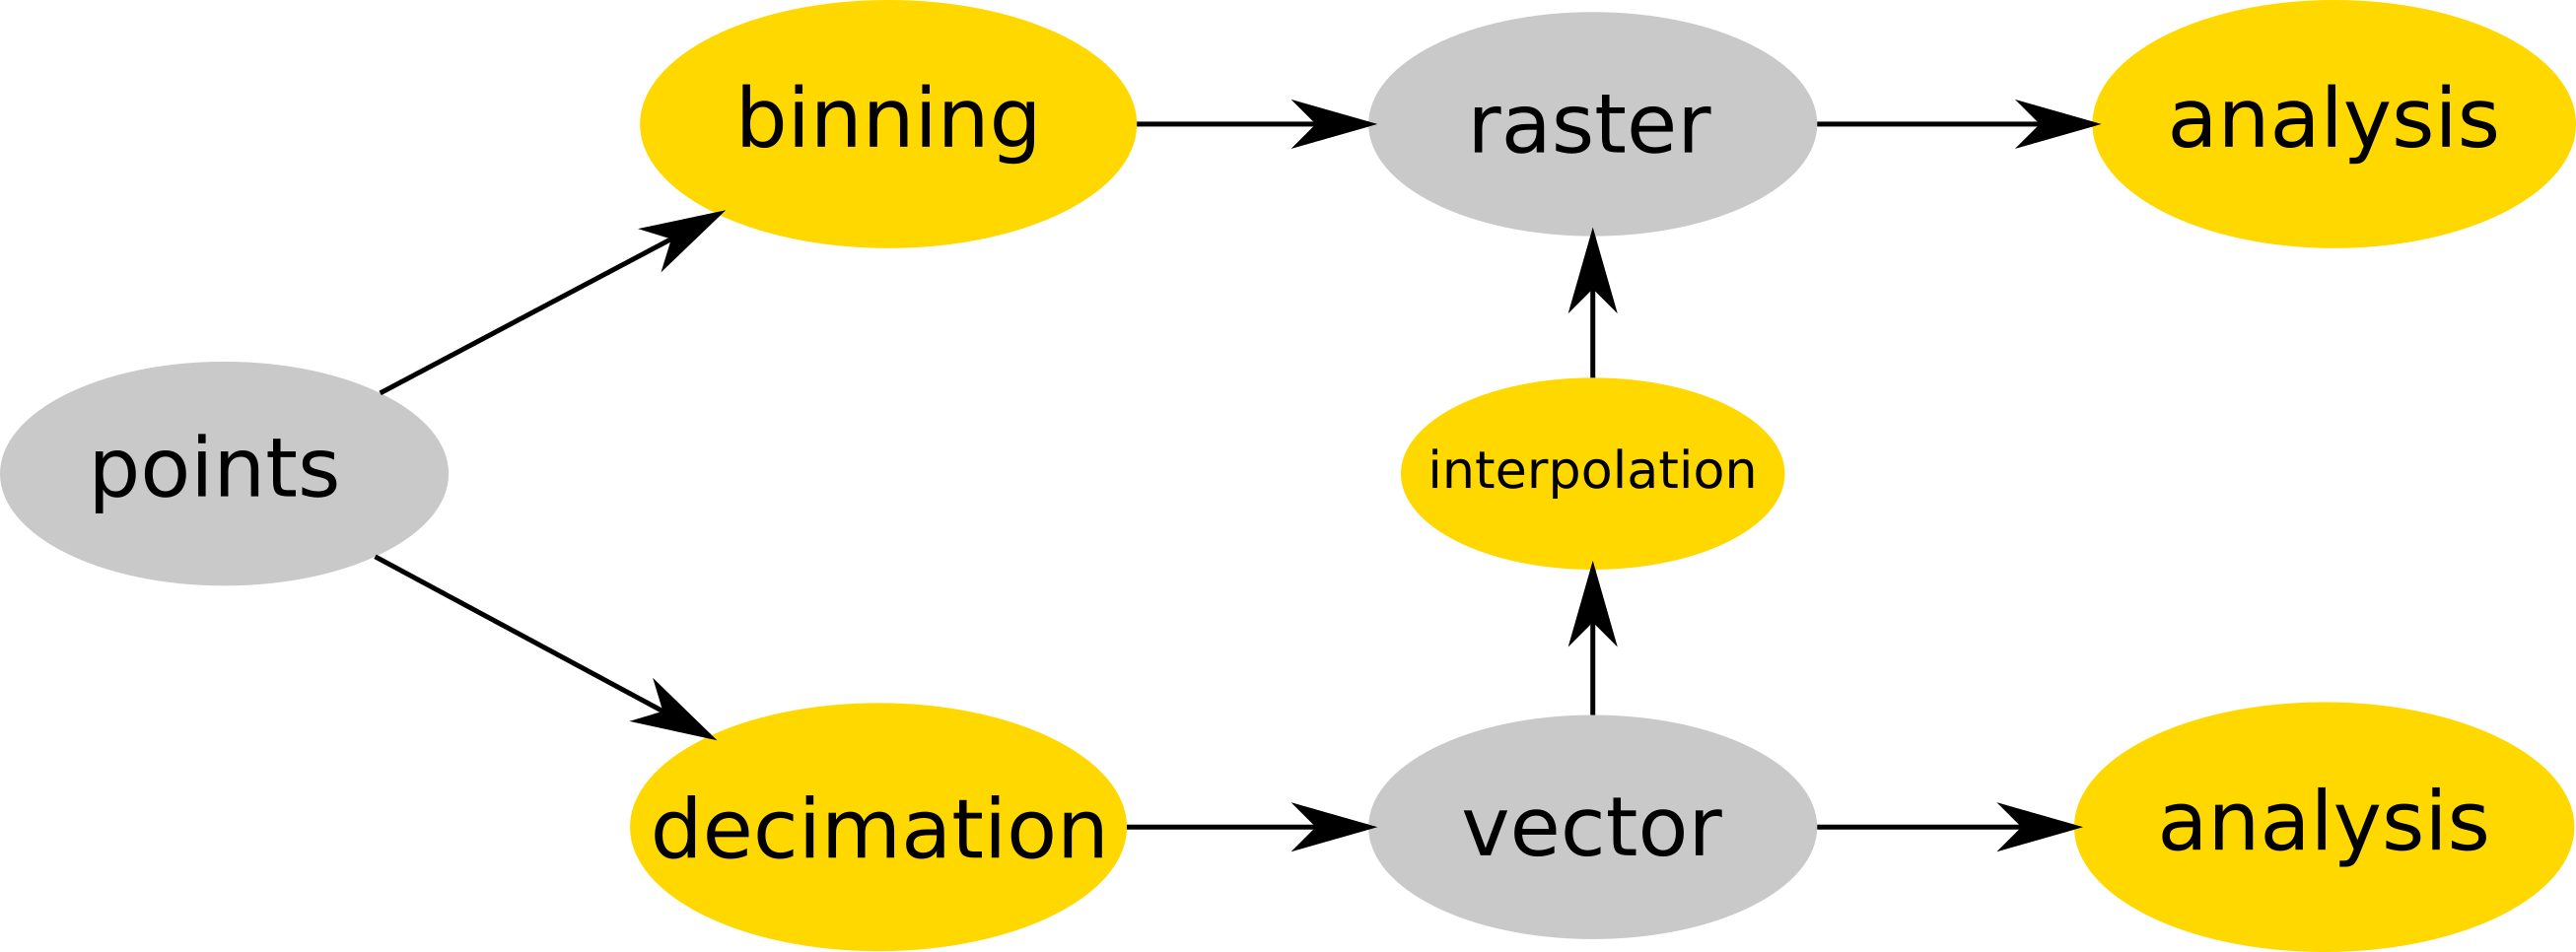 La nube de puntos es o almacenada (binned) en un ráster (ej. r.in.lidar) y luego analizada como ráster u opcionalmente decimada v.in.lidar), convertida a un vectorial (usando v.in.lidar) y luego interpolada (ej. v.surf.rst). Datos en gris, procesos en amarillo.